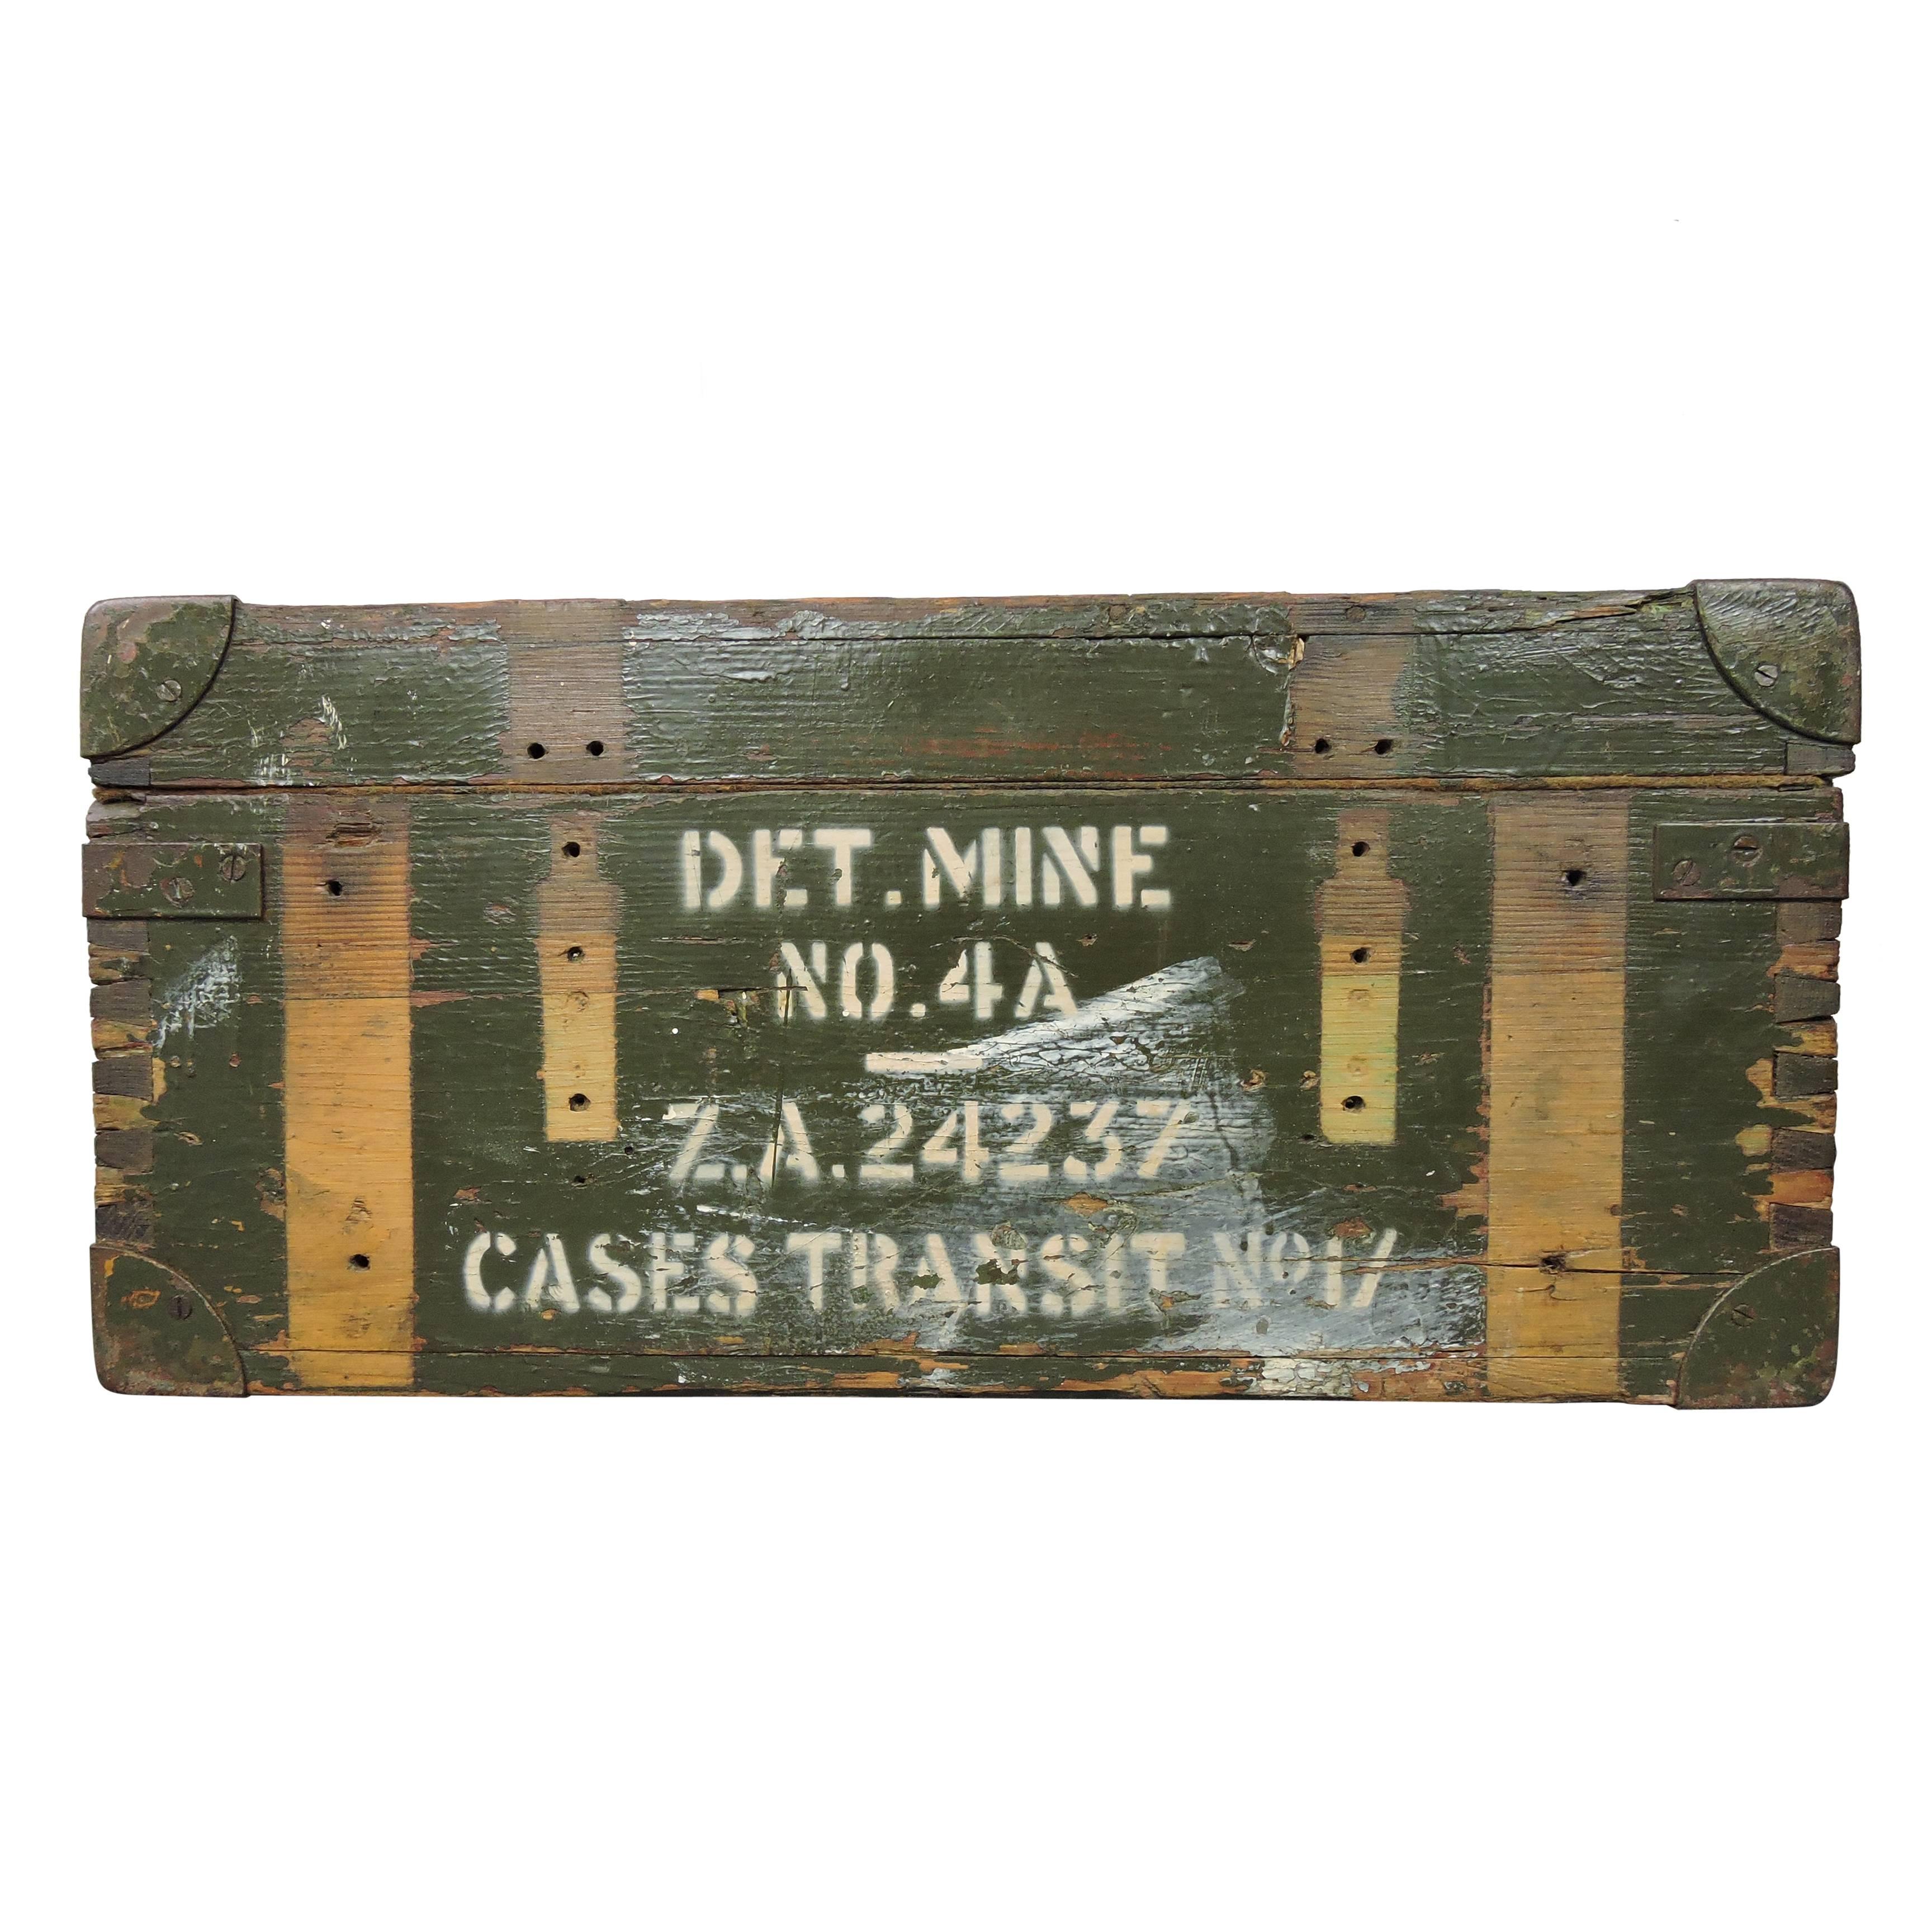 World War II Ammunition Box